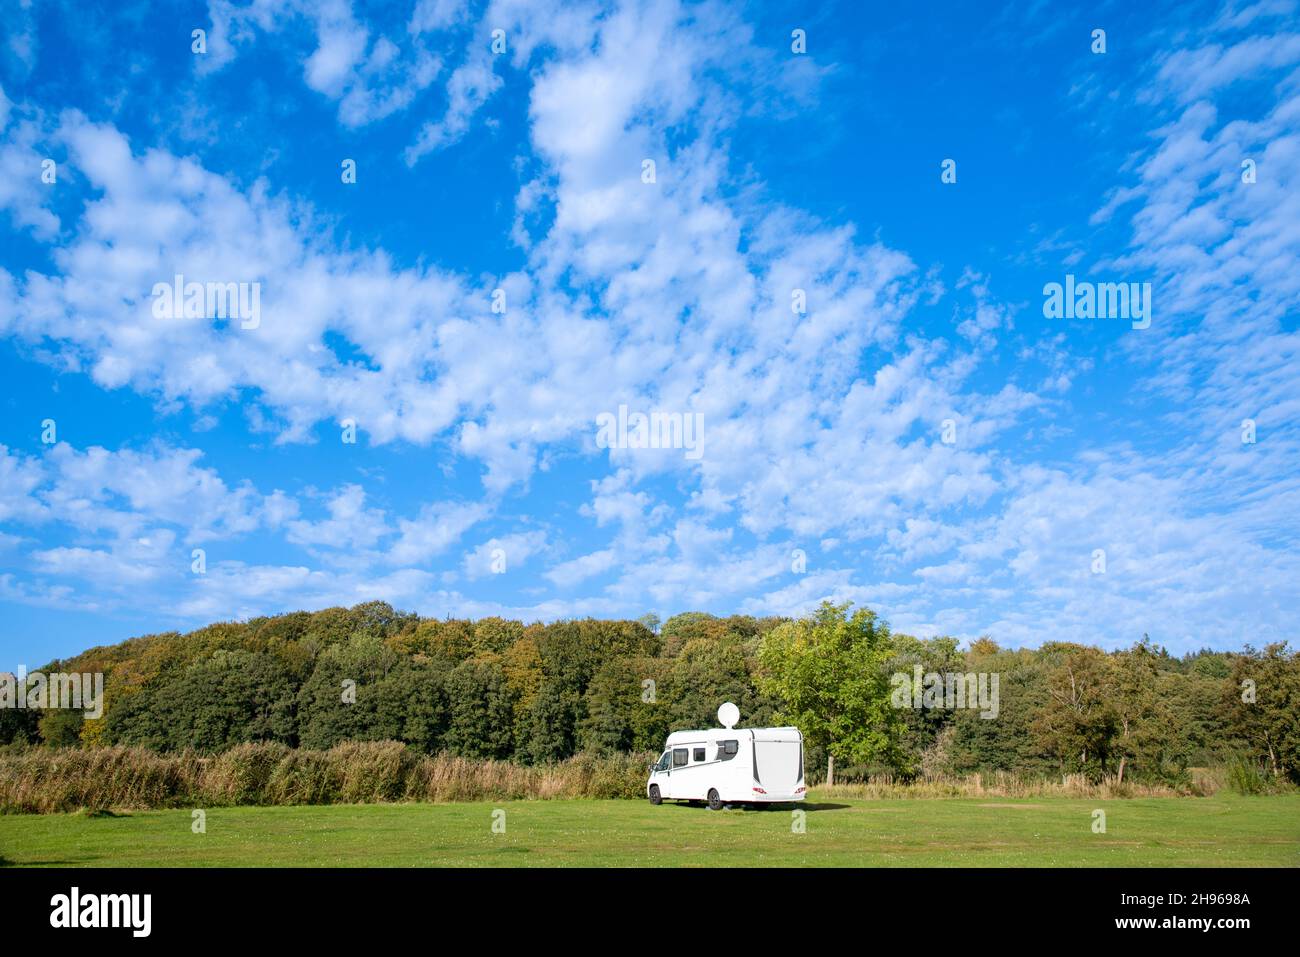 Wohnmobil auf einem Campingplatz Foto de stock